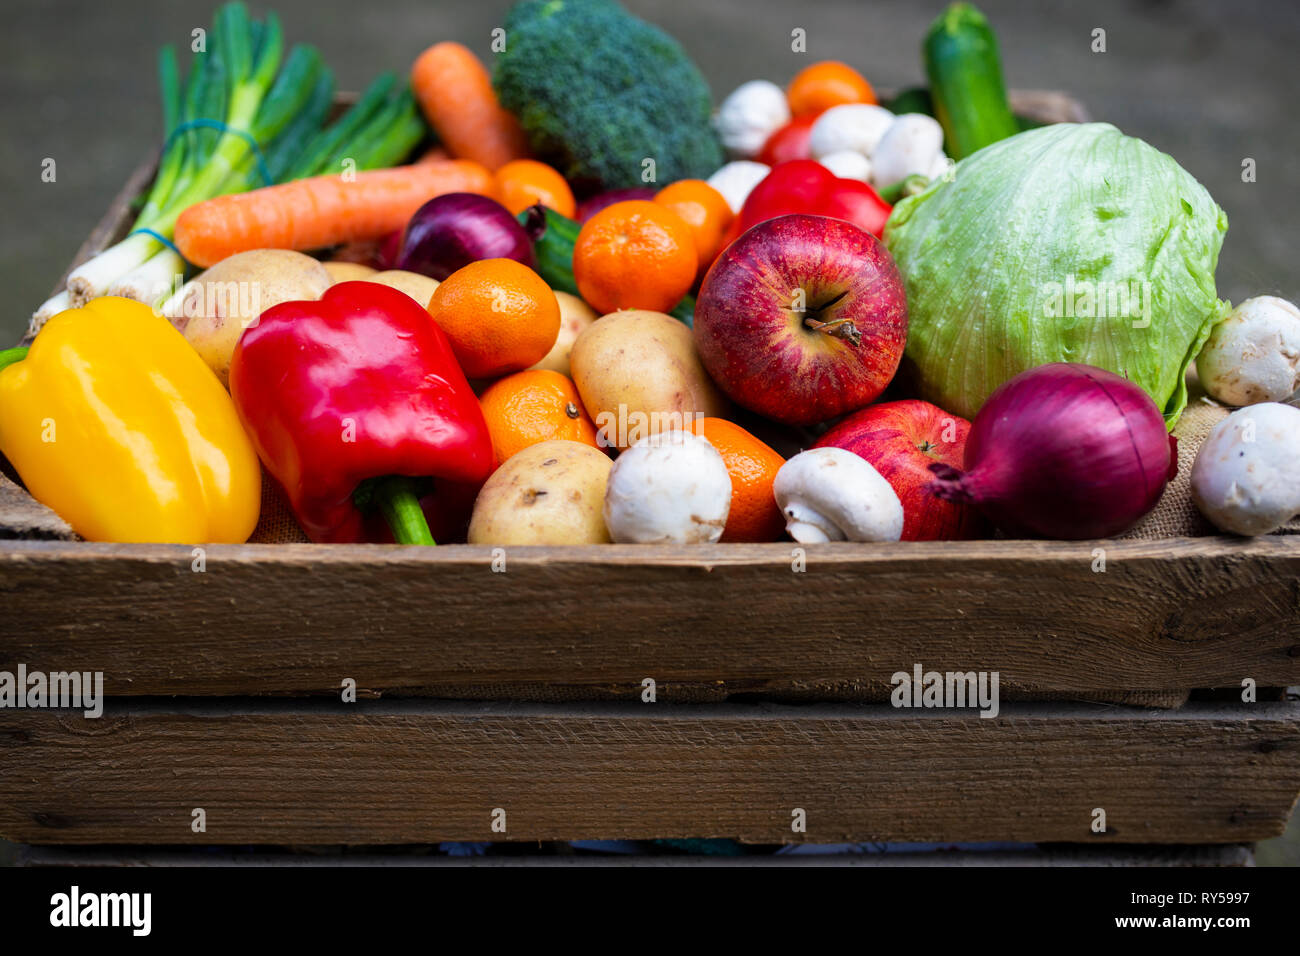 Fruits et légumes.Une caisse en bois d'époque remplie de fruits et légumes frais colorés pour favoriser une vie saine à base de plantes végétaliennes. Banque D'Images